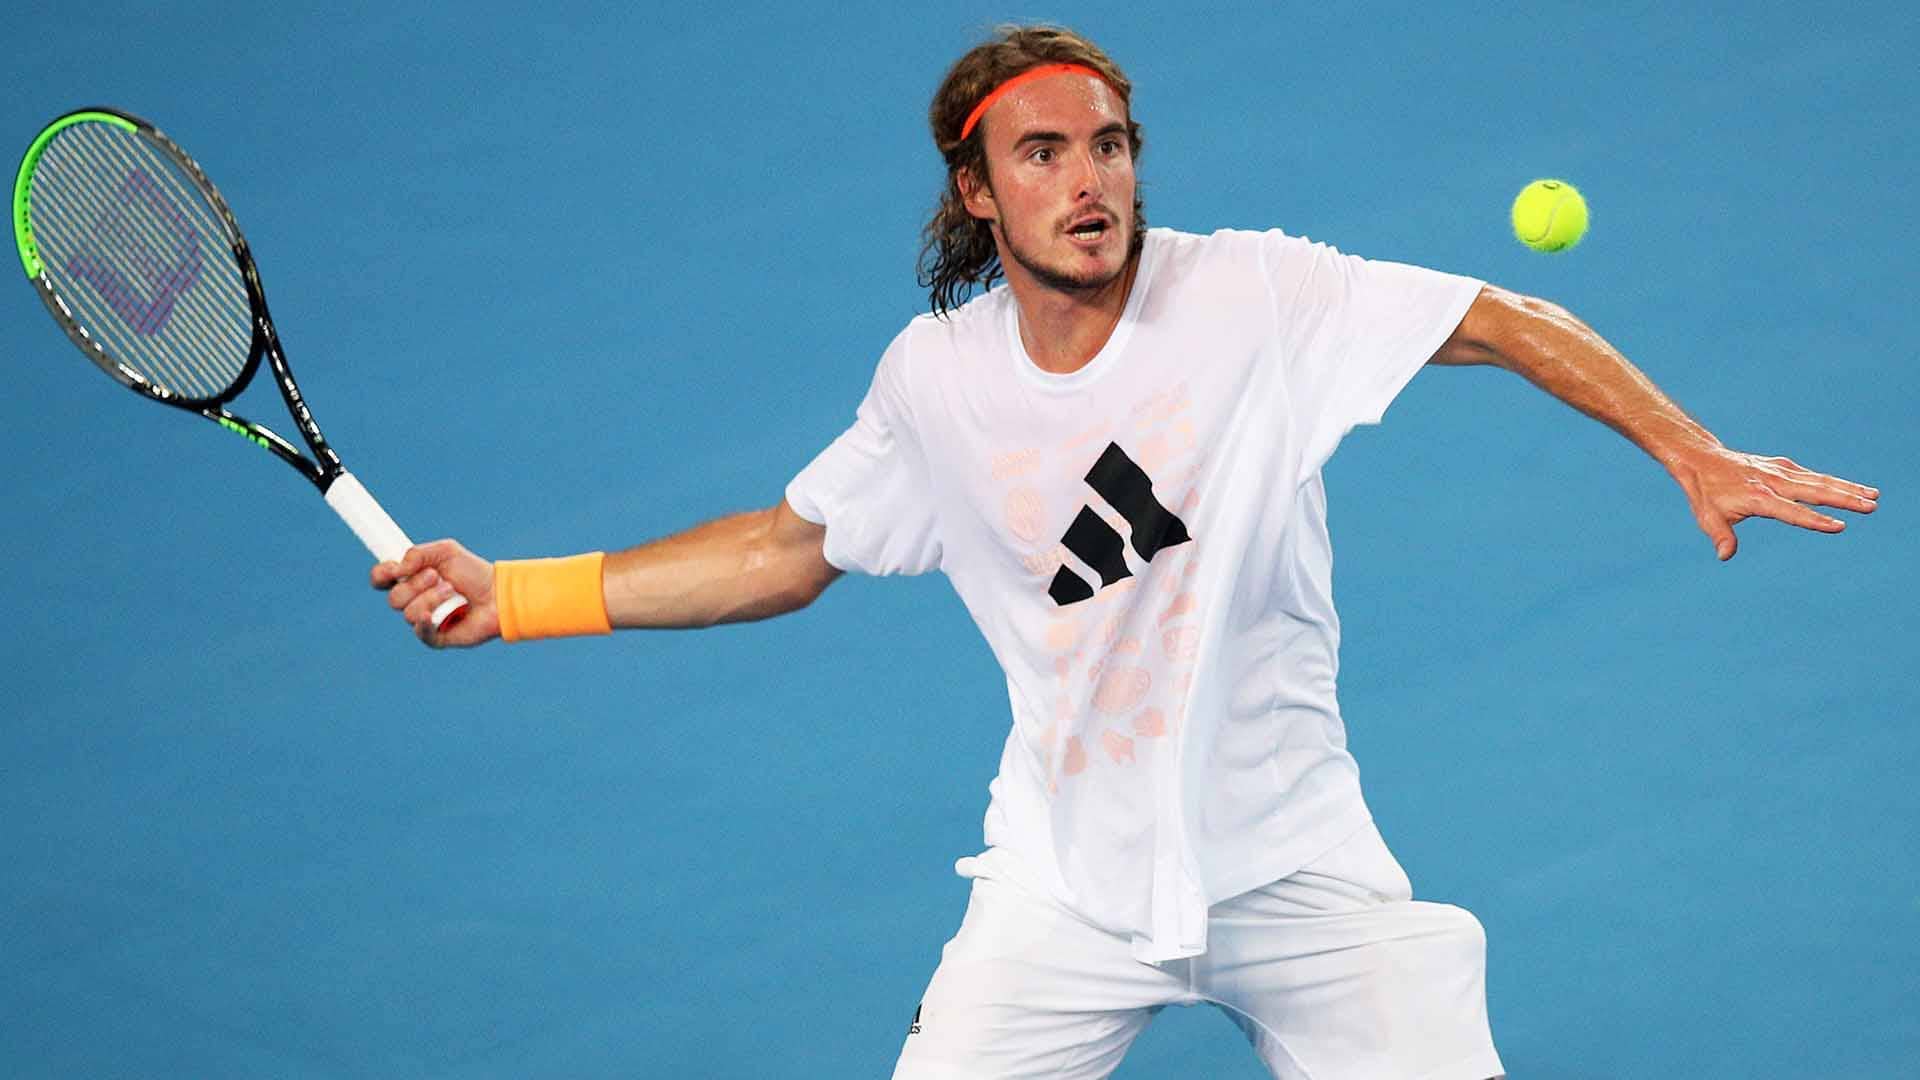 national Abe helikopter Roger Federer, Novak Djokovic Begin Australian Open Runs On Monday In  Melbourne | ATP Tour | Tennis